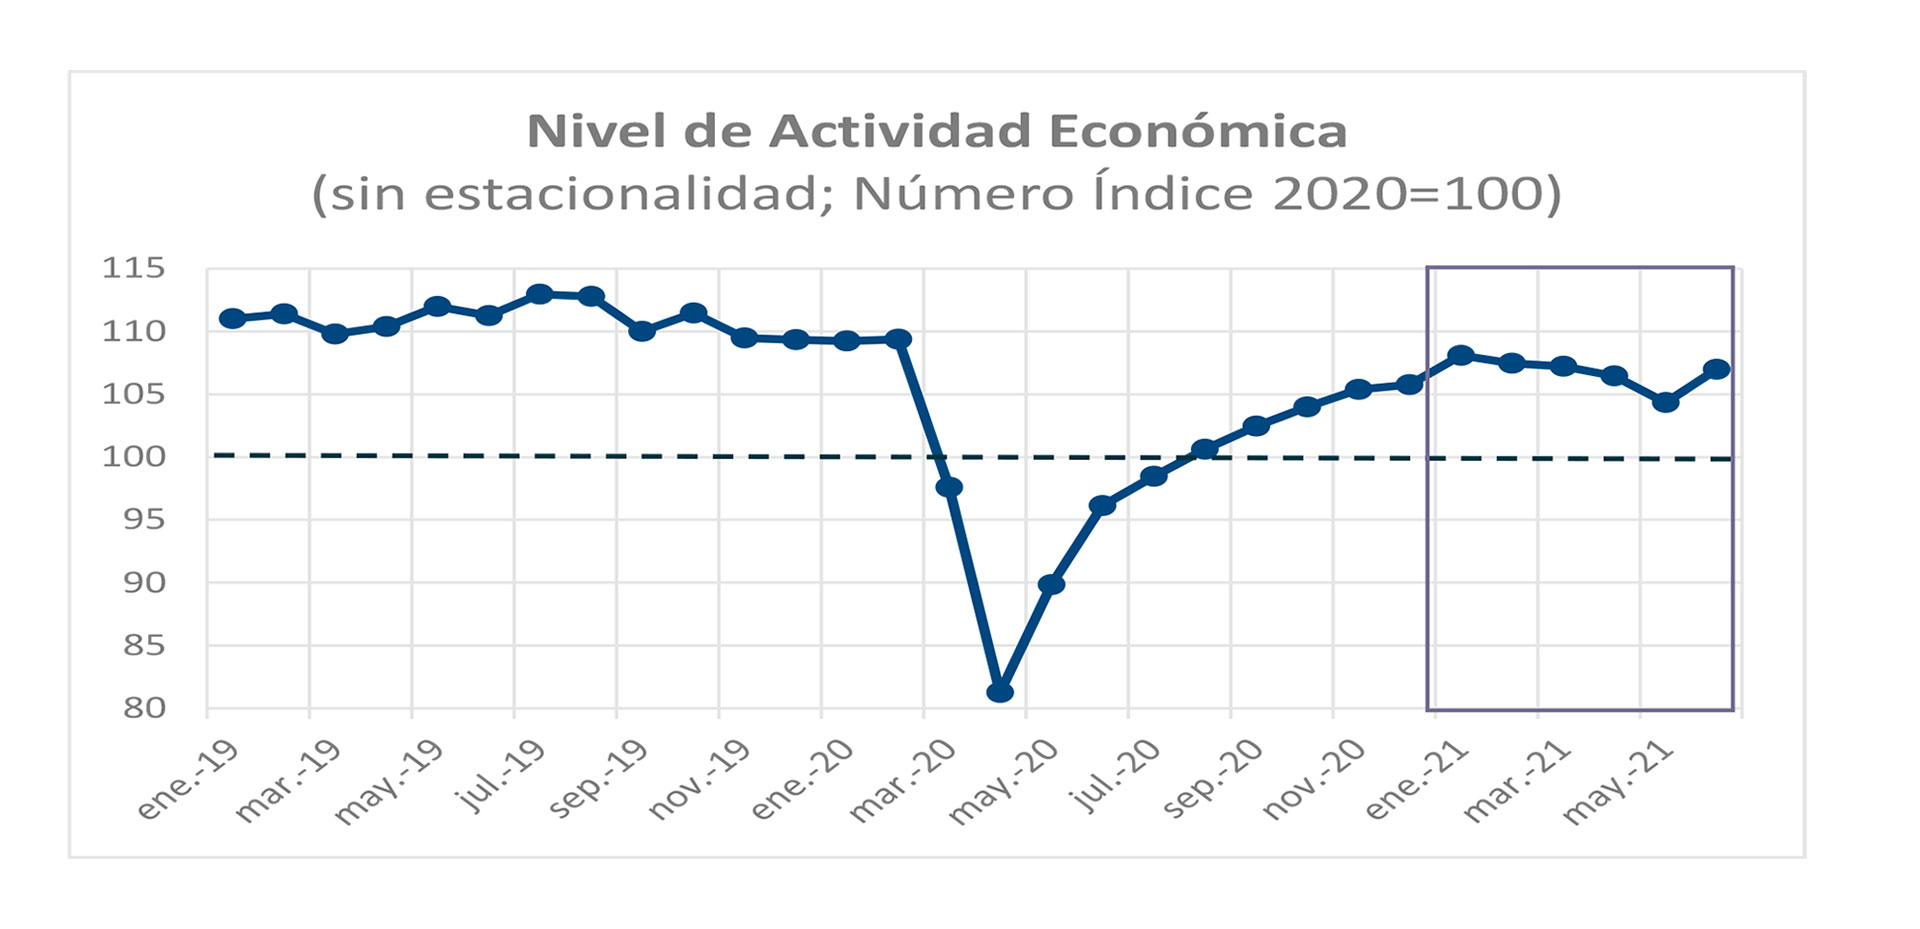 La actividad económica según Alvarez Agis